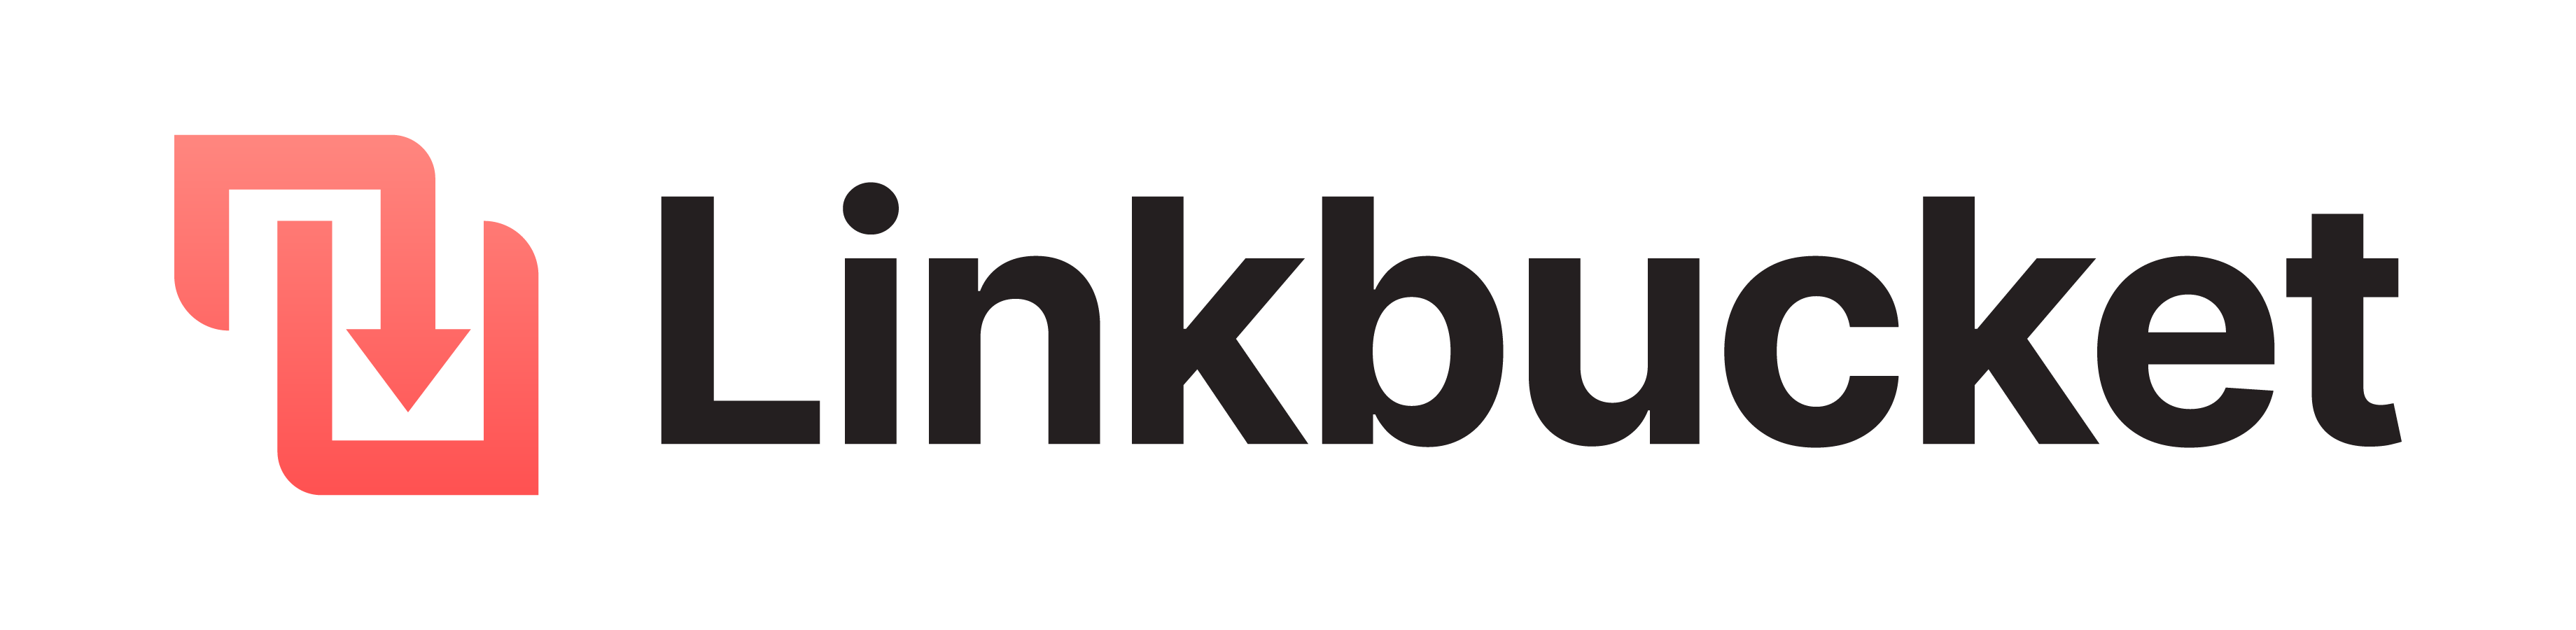 Linkbucket Logo